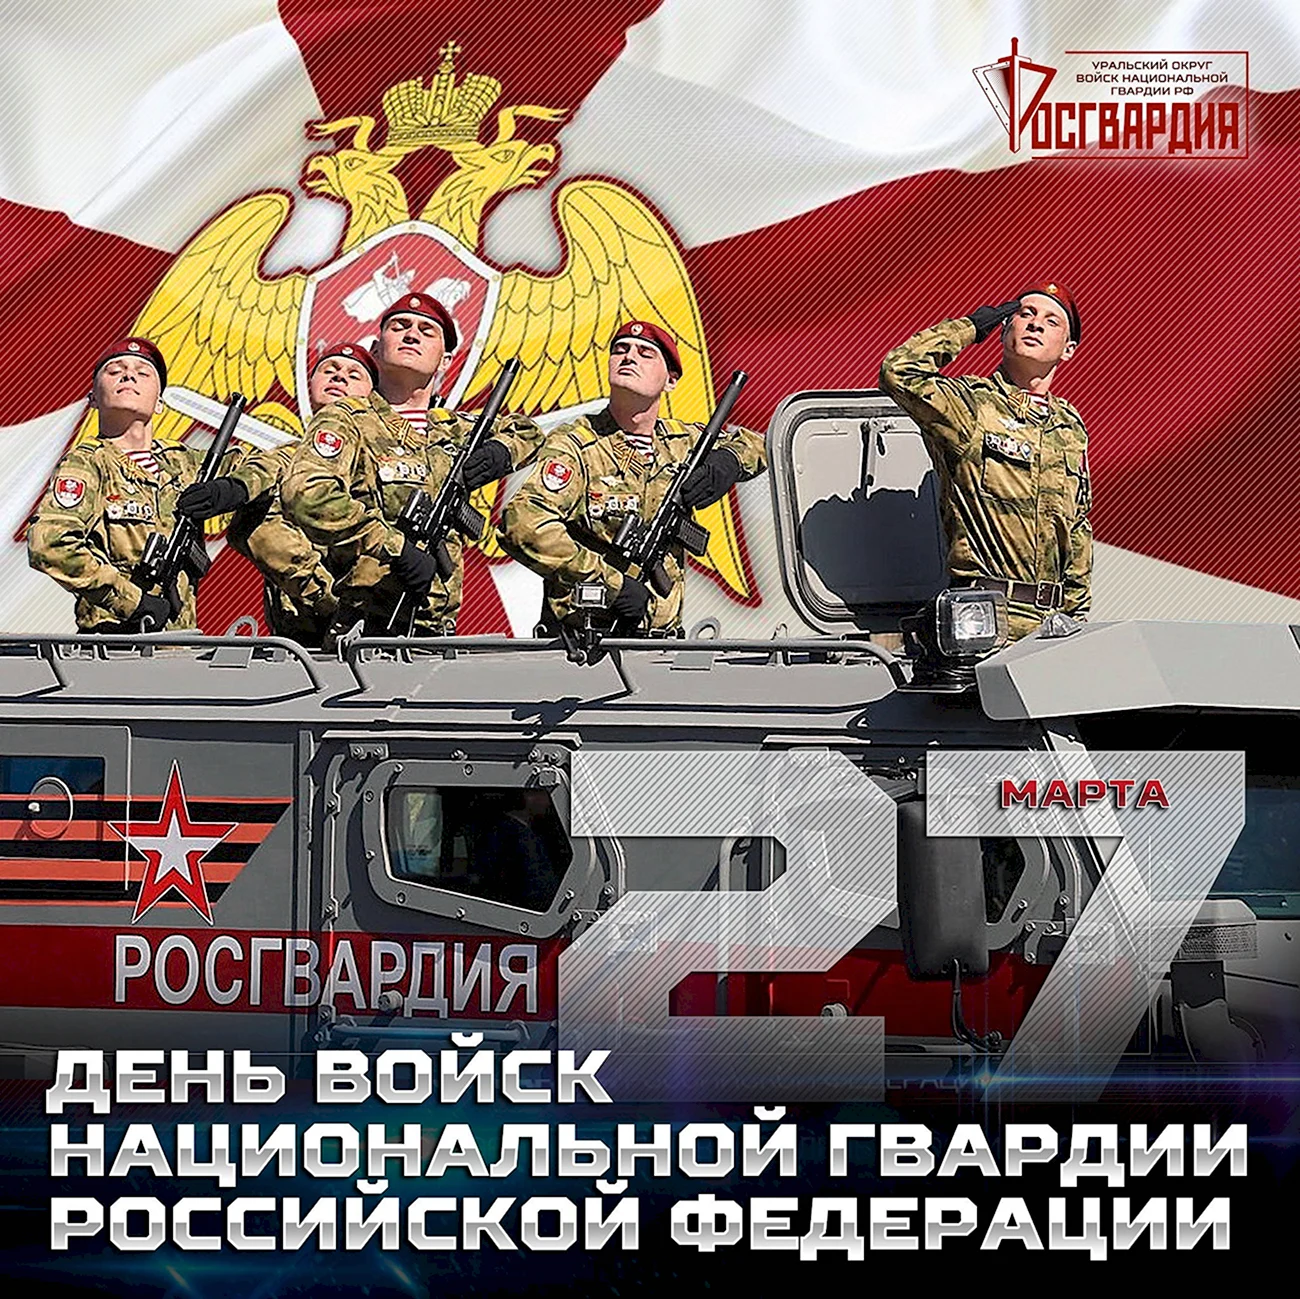 27 Марта день войск национальной гвардии РФ. Поздравление